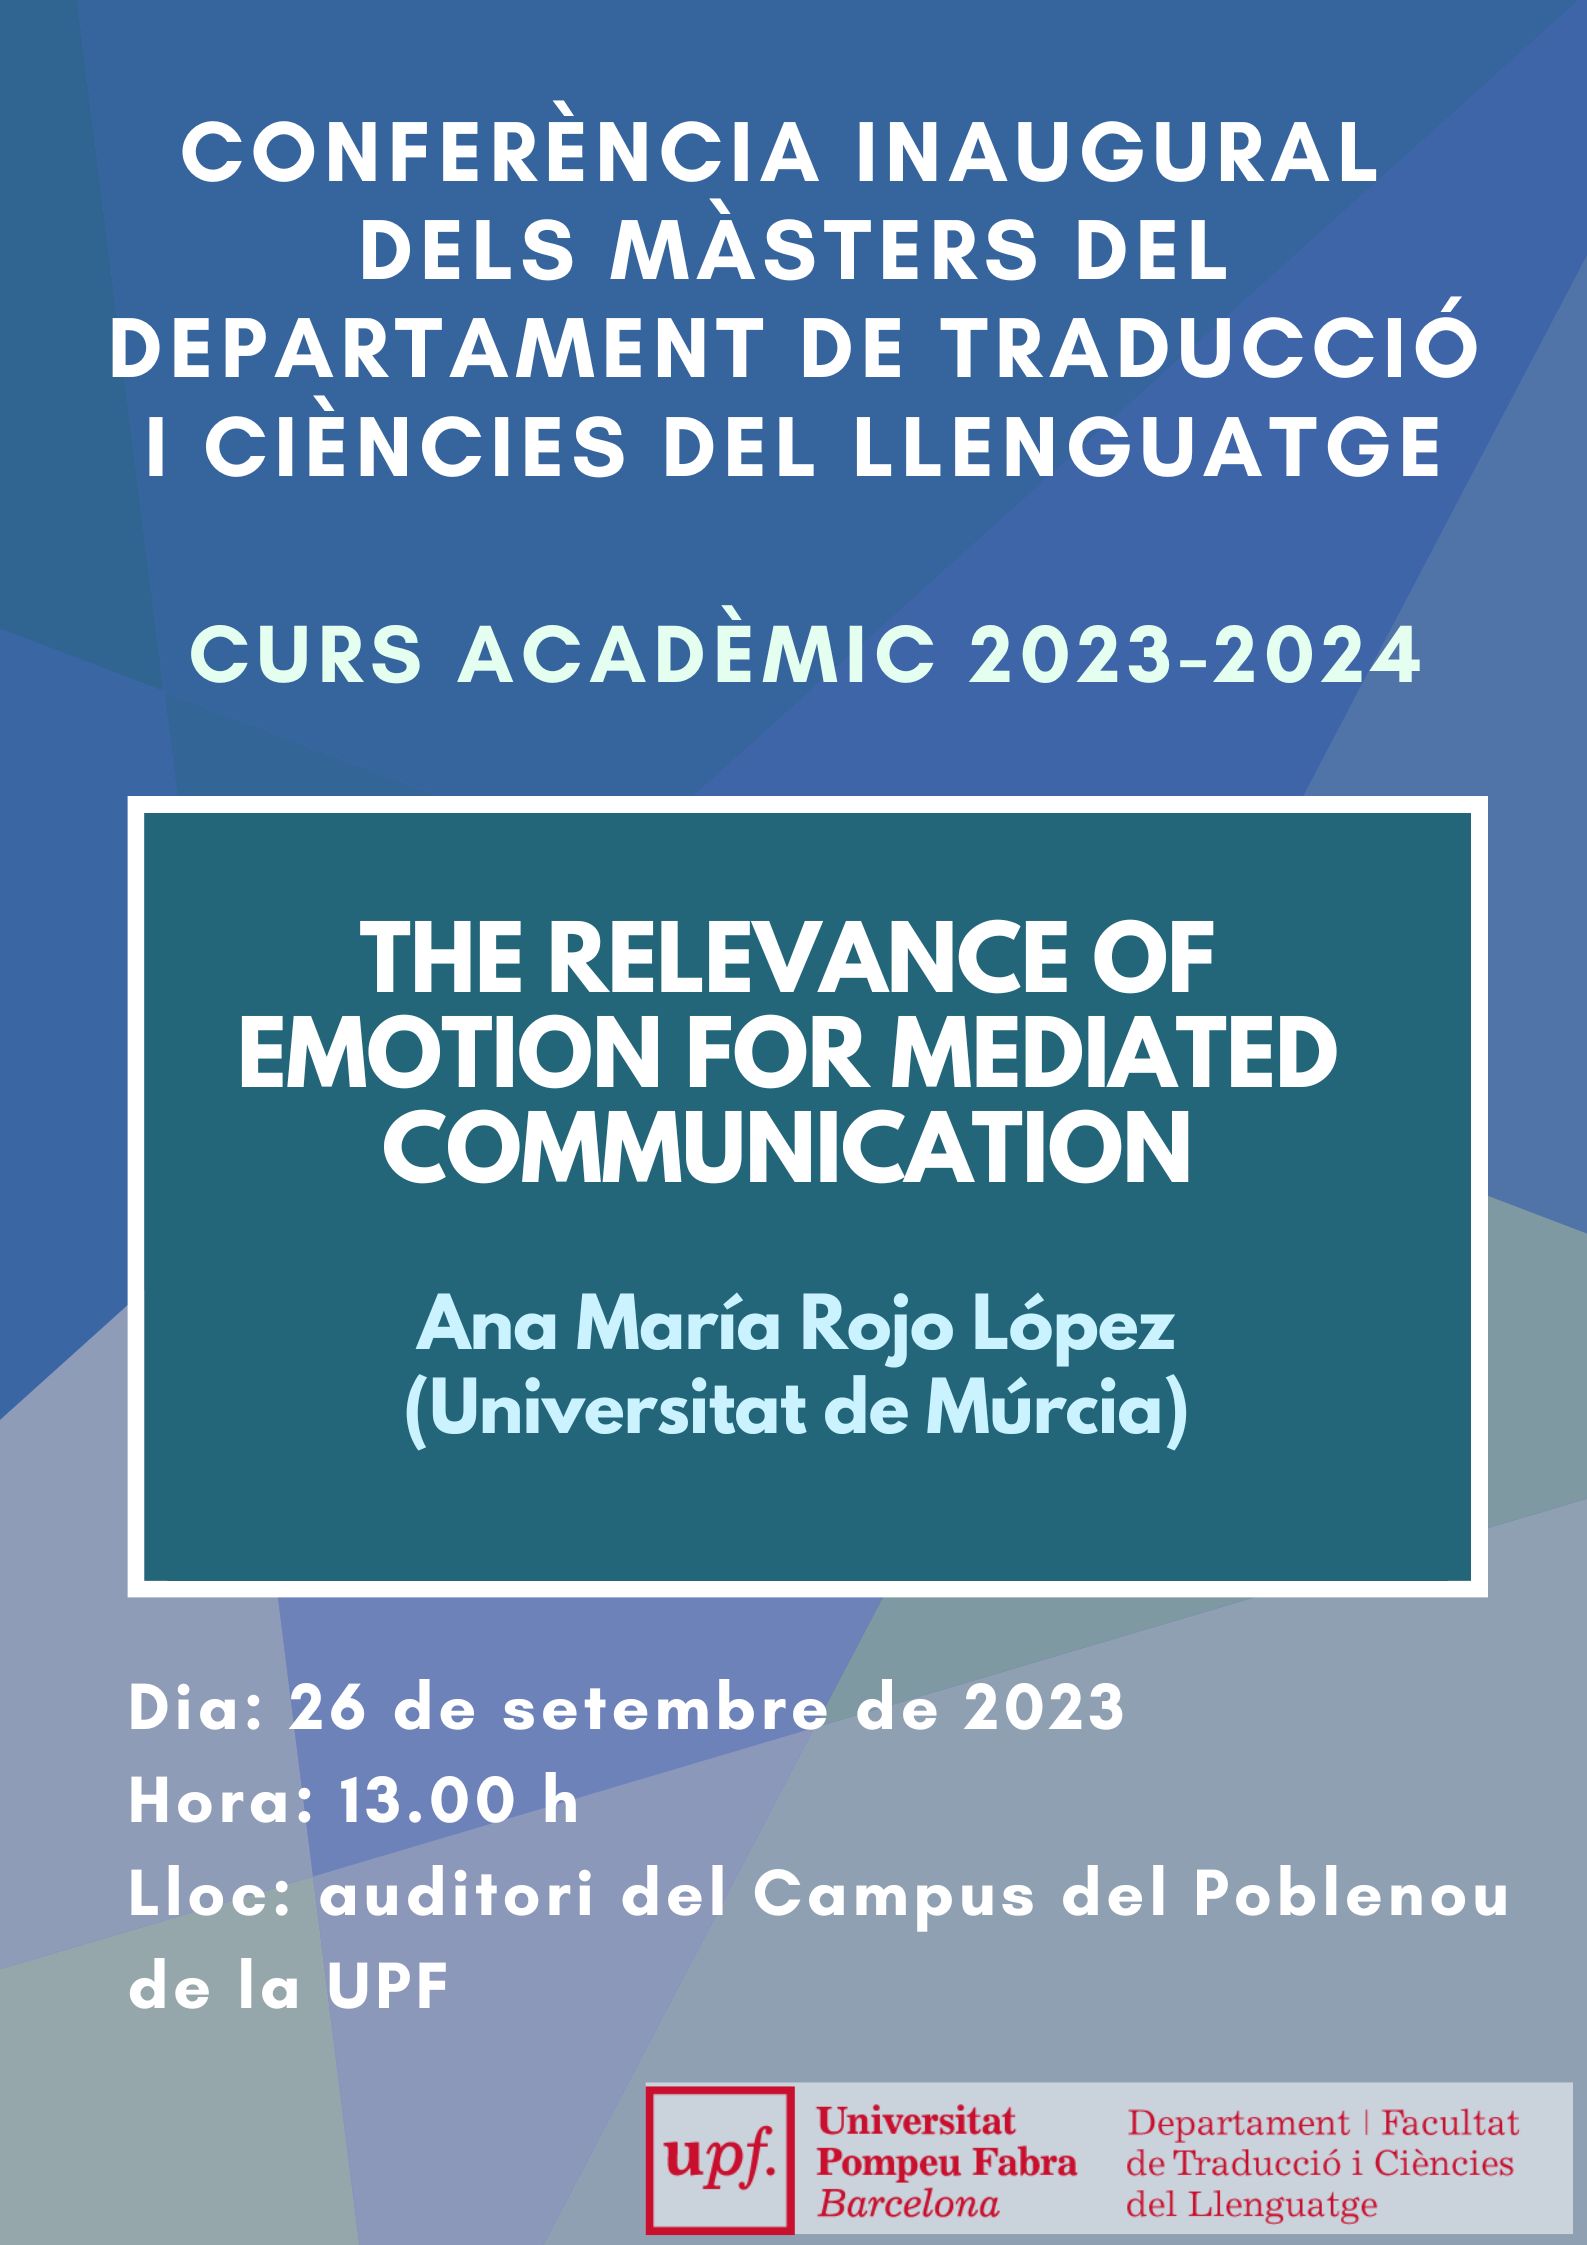 26/09/2023 Conferència inaugural dels Màsters del Departament de Traducció i Ciències del Llenguatge